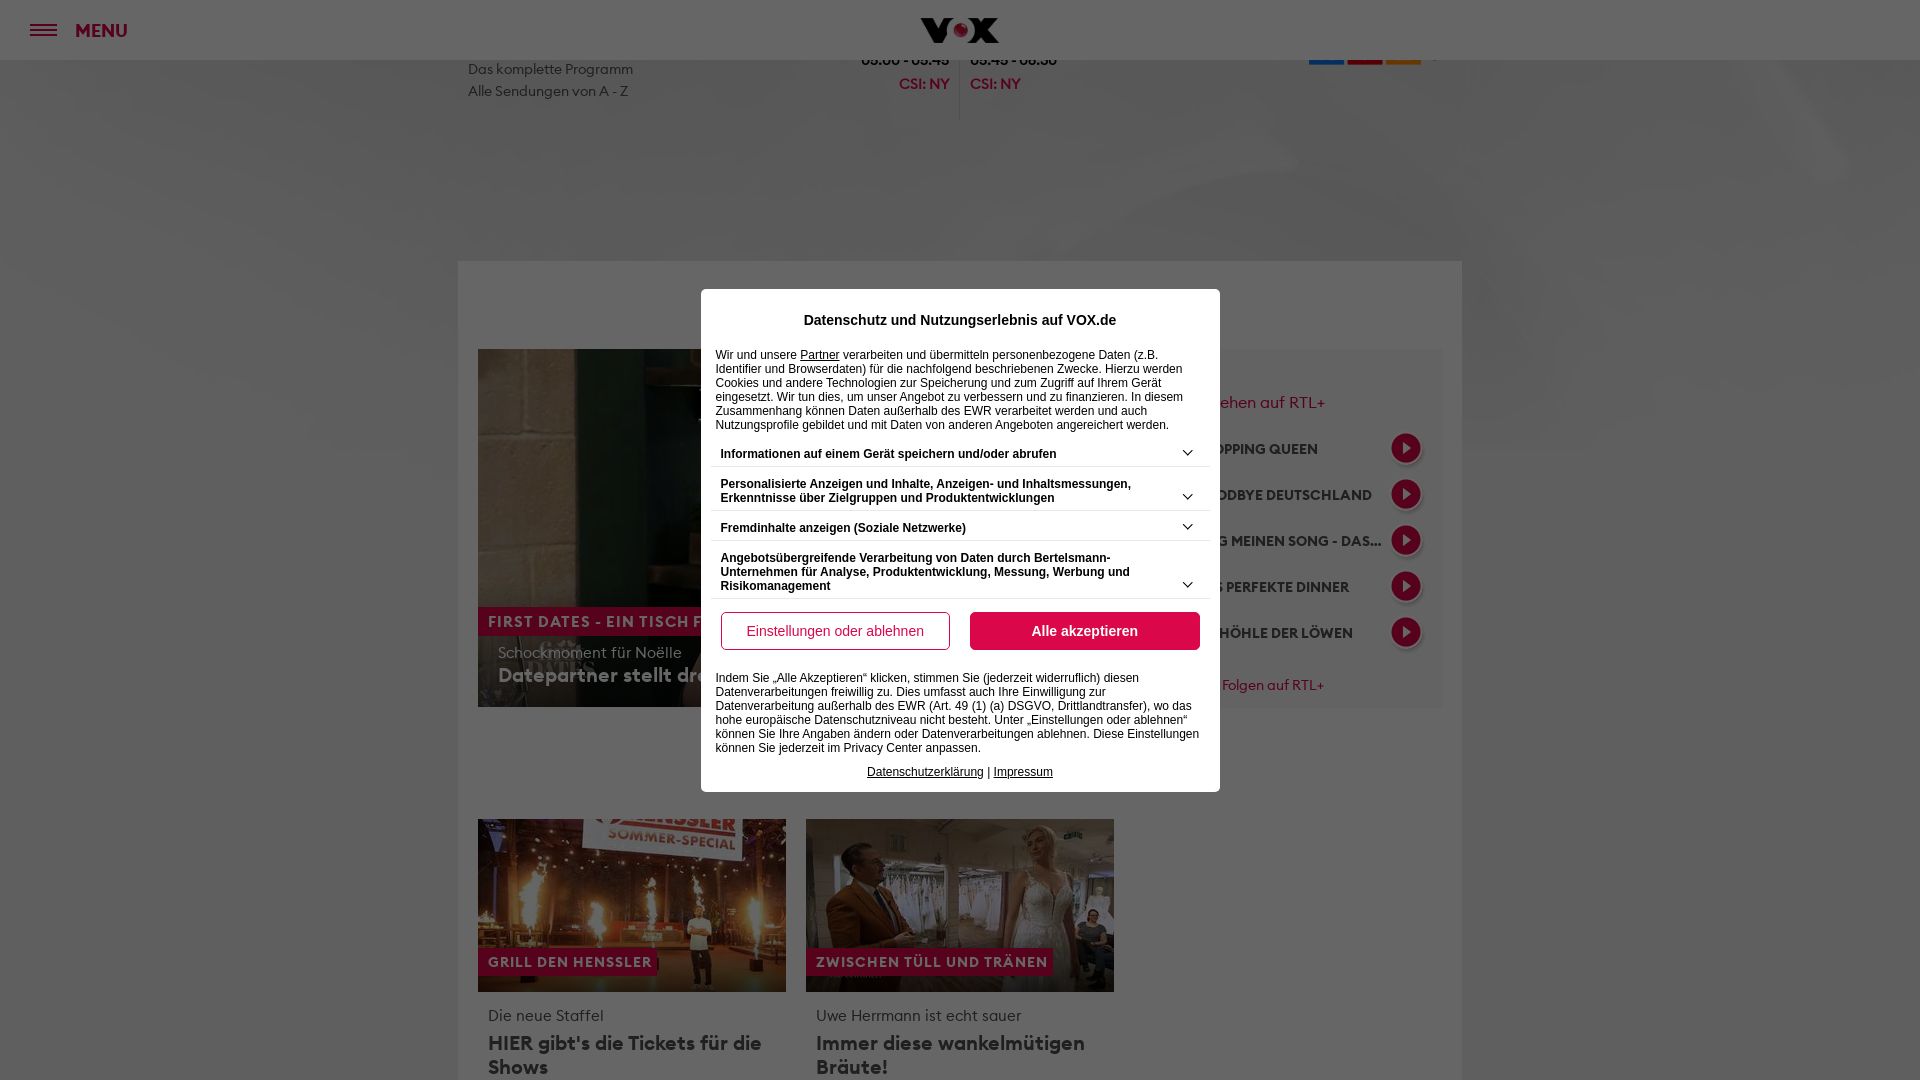 Website status vox.de is   ONLINE